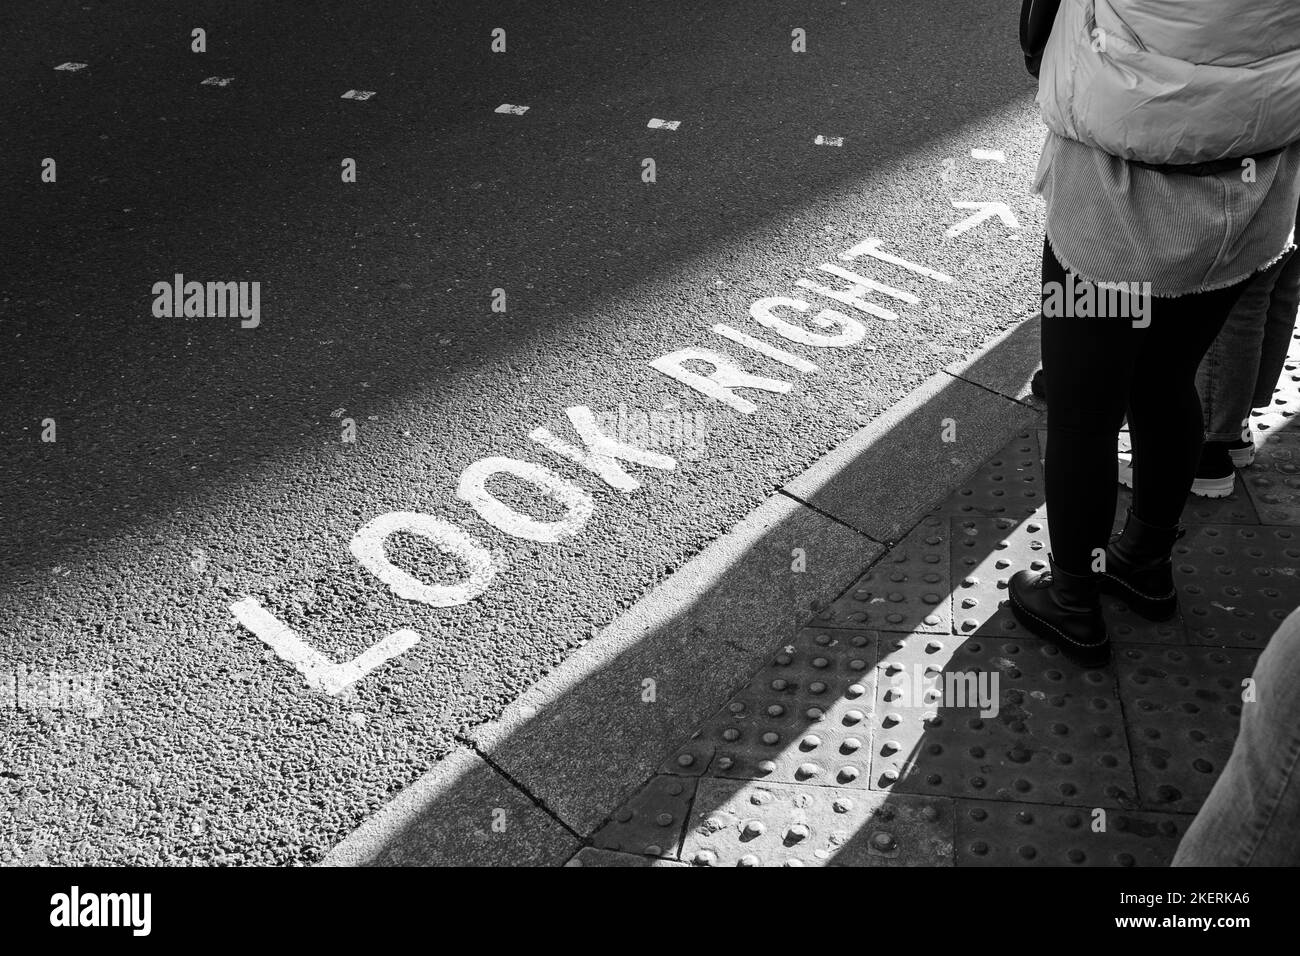 L'iconica segnaletica stradale dipinta a destra per i pedoni a Londra. Concetto: Attraversare la strada, sicurezza stradale, pedoni in attesa, visitare Londra Foto Stock